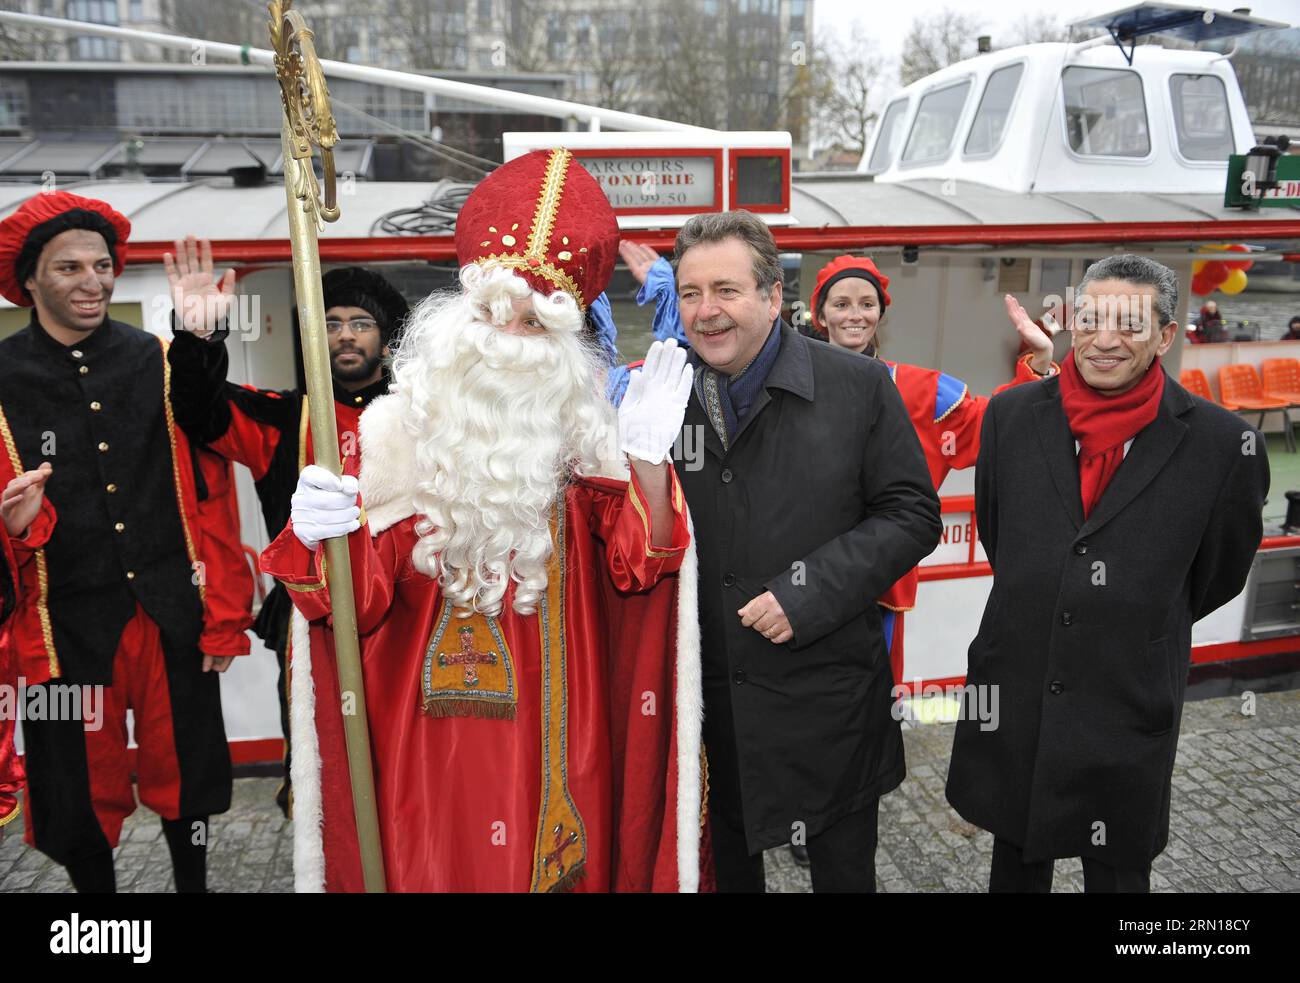 (141205) -- BRÜSSEL, 5. Dezember 2014 -- der Ministerpräsident der Region Brüssel-Hauptstadt Rudi Vervoort (R, Zentrum) begrüßt Saint-Nicolas (Sinterklaas) und seine Helfer bei ihrer Ankunft in Brüssel, Belgien, mit dem Boot am 5. Dezember 2014. Saint-Nicolas, der eine der Quellen der beliebten Weihnachtsfigur des Weihnachtsmanns ist, wird jährlich mit Geschenken in der Nacht vor oder am Heiligen Nikolaus-Tag am 6. Dezember in Belgien gefeiert. ) BELGIEN-BRÜSSEL-SAINT NICOLAS YexPingfan PUBLICATIONxNOTxINxCHN Brüssel DEC 5 2014 Minister Präsident der Region Brüssel-Hauptstadt Rudi Vervoort r Stockfoto